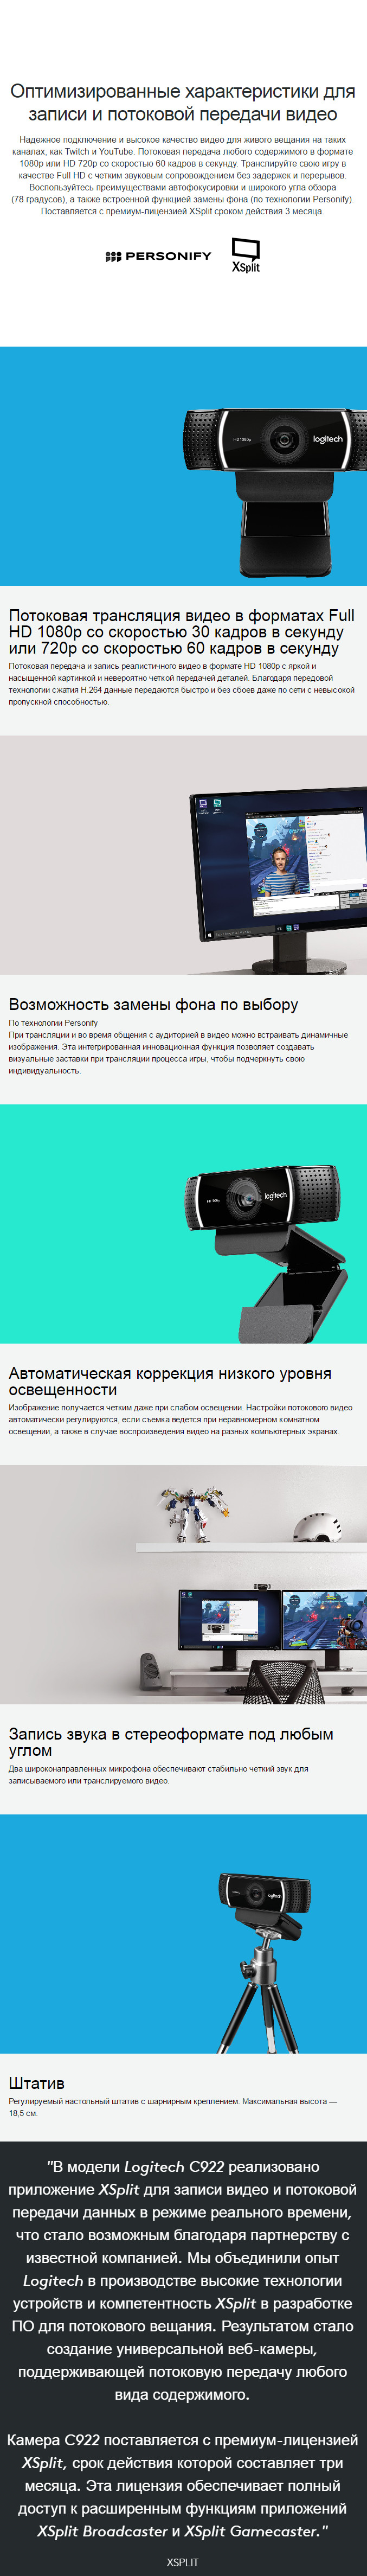 Веб-камера для потоковой передачи Logitech Pro Stream Webcam C922